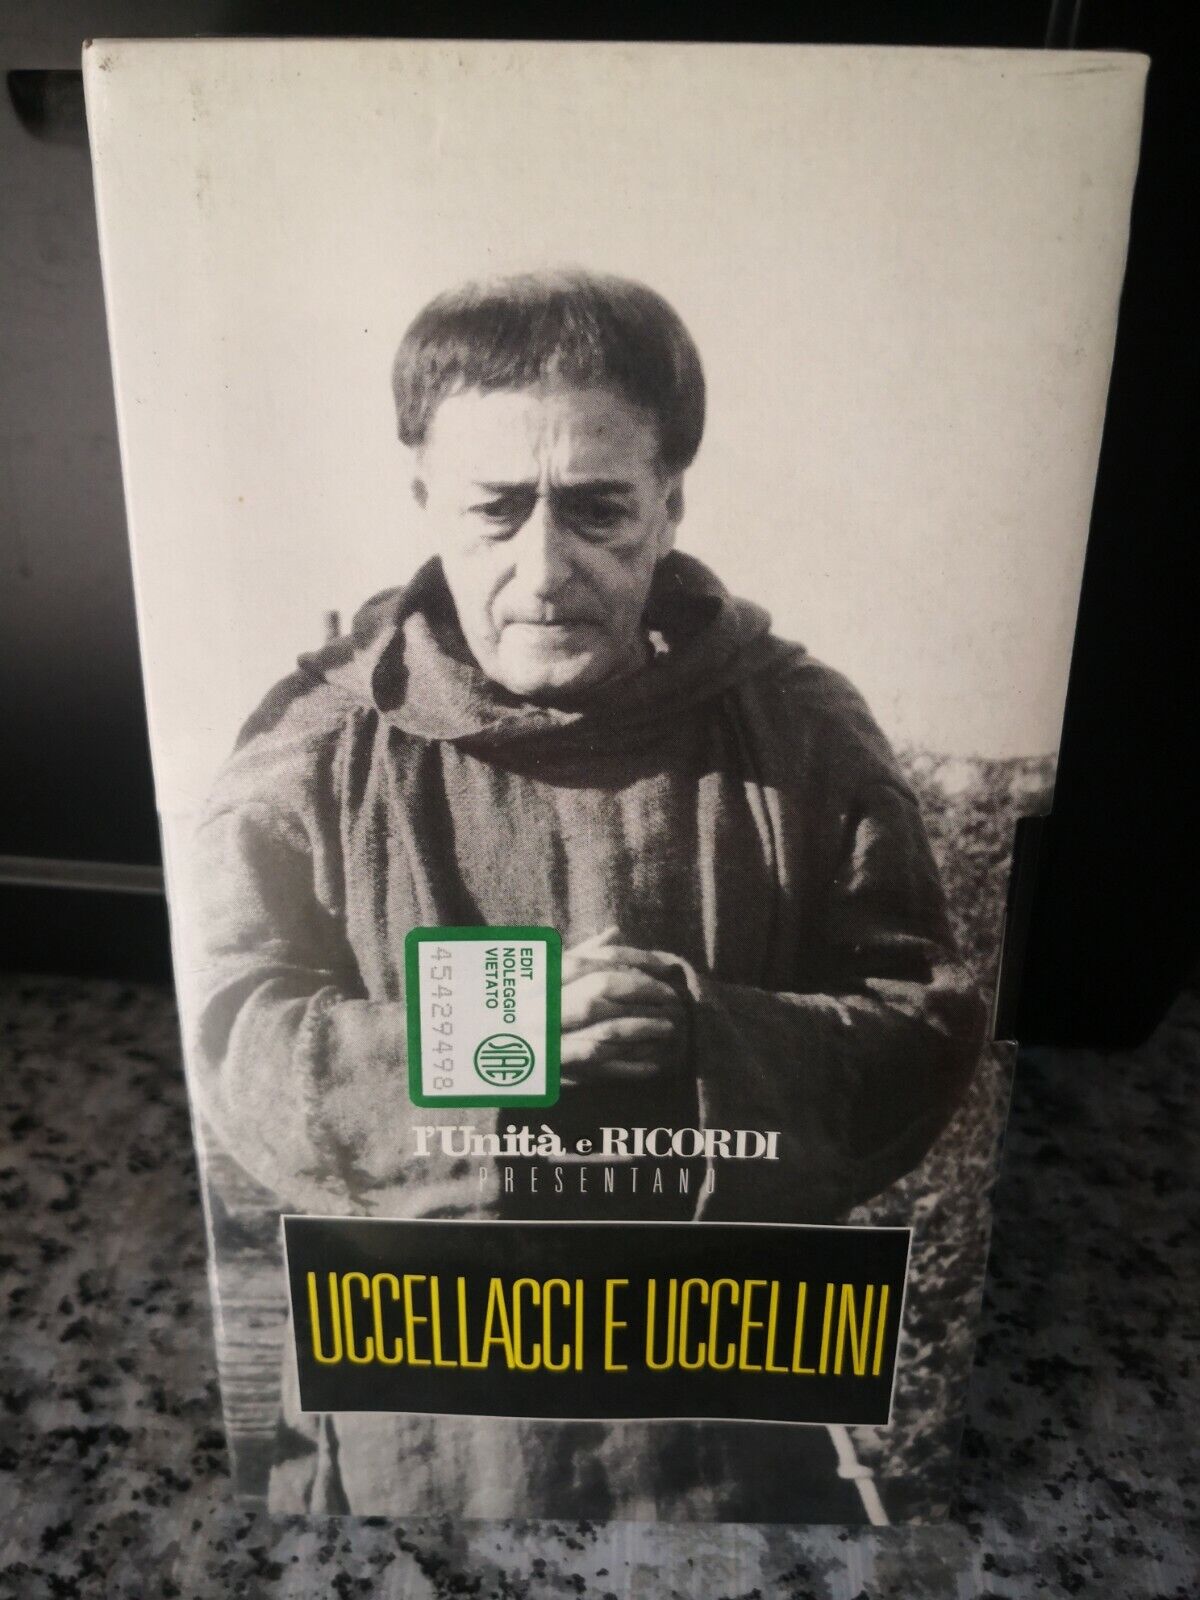 UCCELLACCI E UCCELLINI - Capolavori italiani n. 15 - vhs- 1966 - L'unit? -F